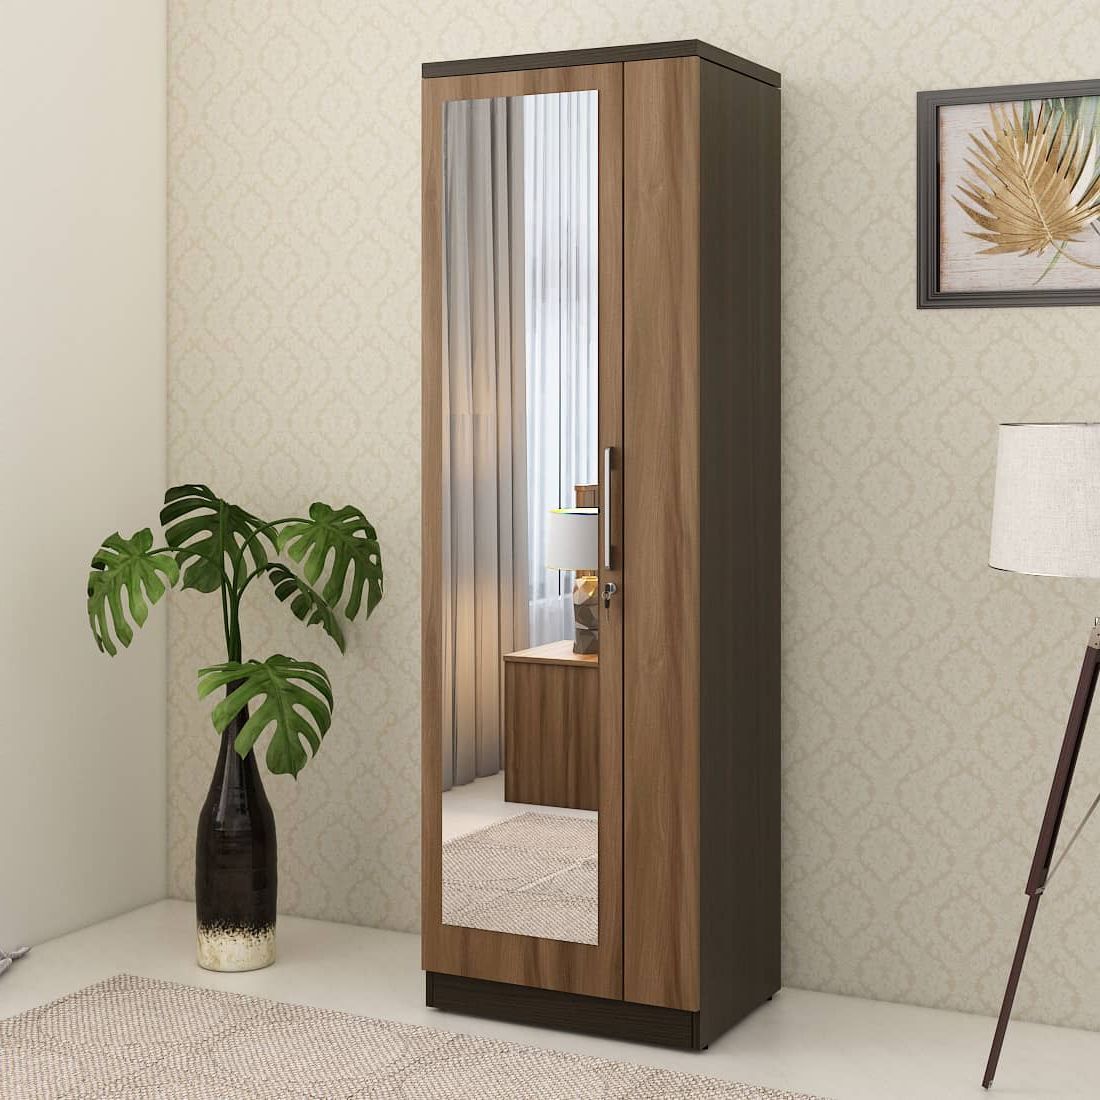 Kosmo Ken 1 Door Wardrobe With Mirror Walnut Bronze Woodpore | Spacewood  Ecommerce Regarding One Door Mirrored Wardrobes (View 2 of 20)